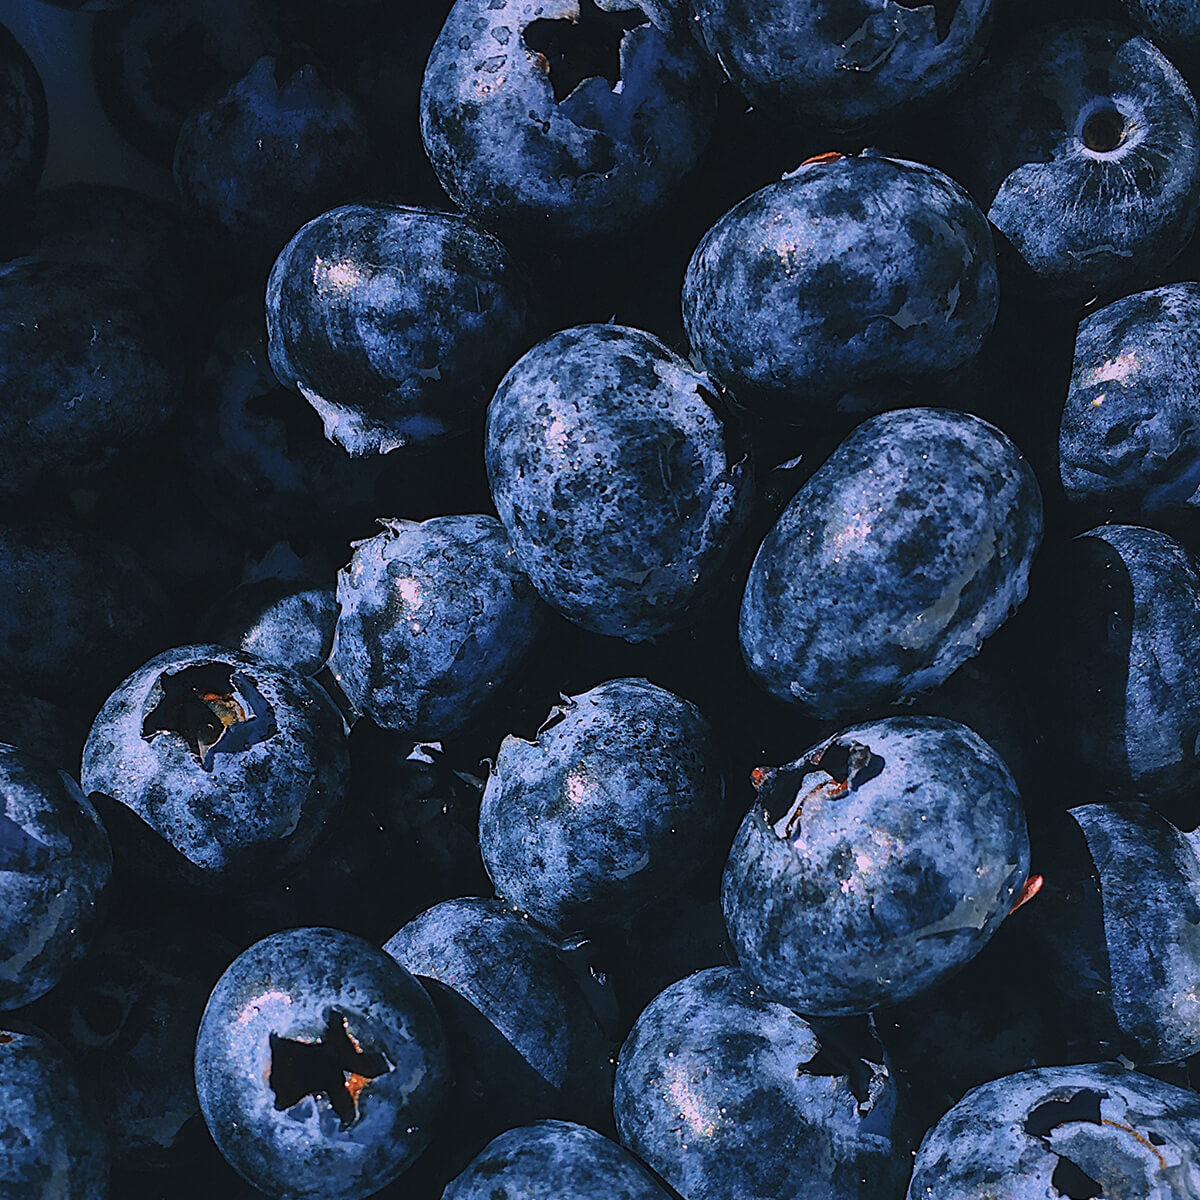 Sweet Blueberries